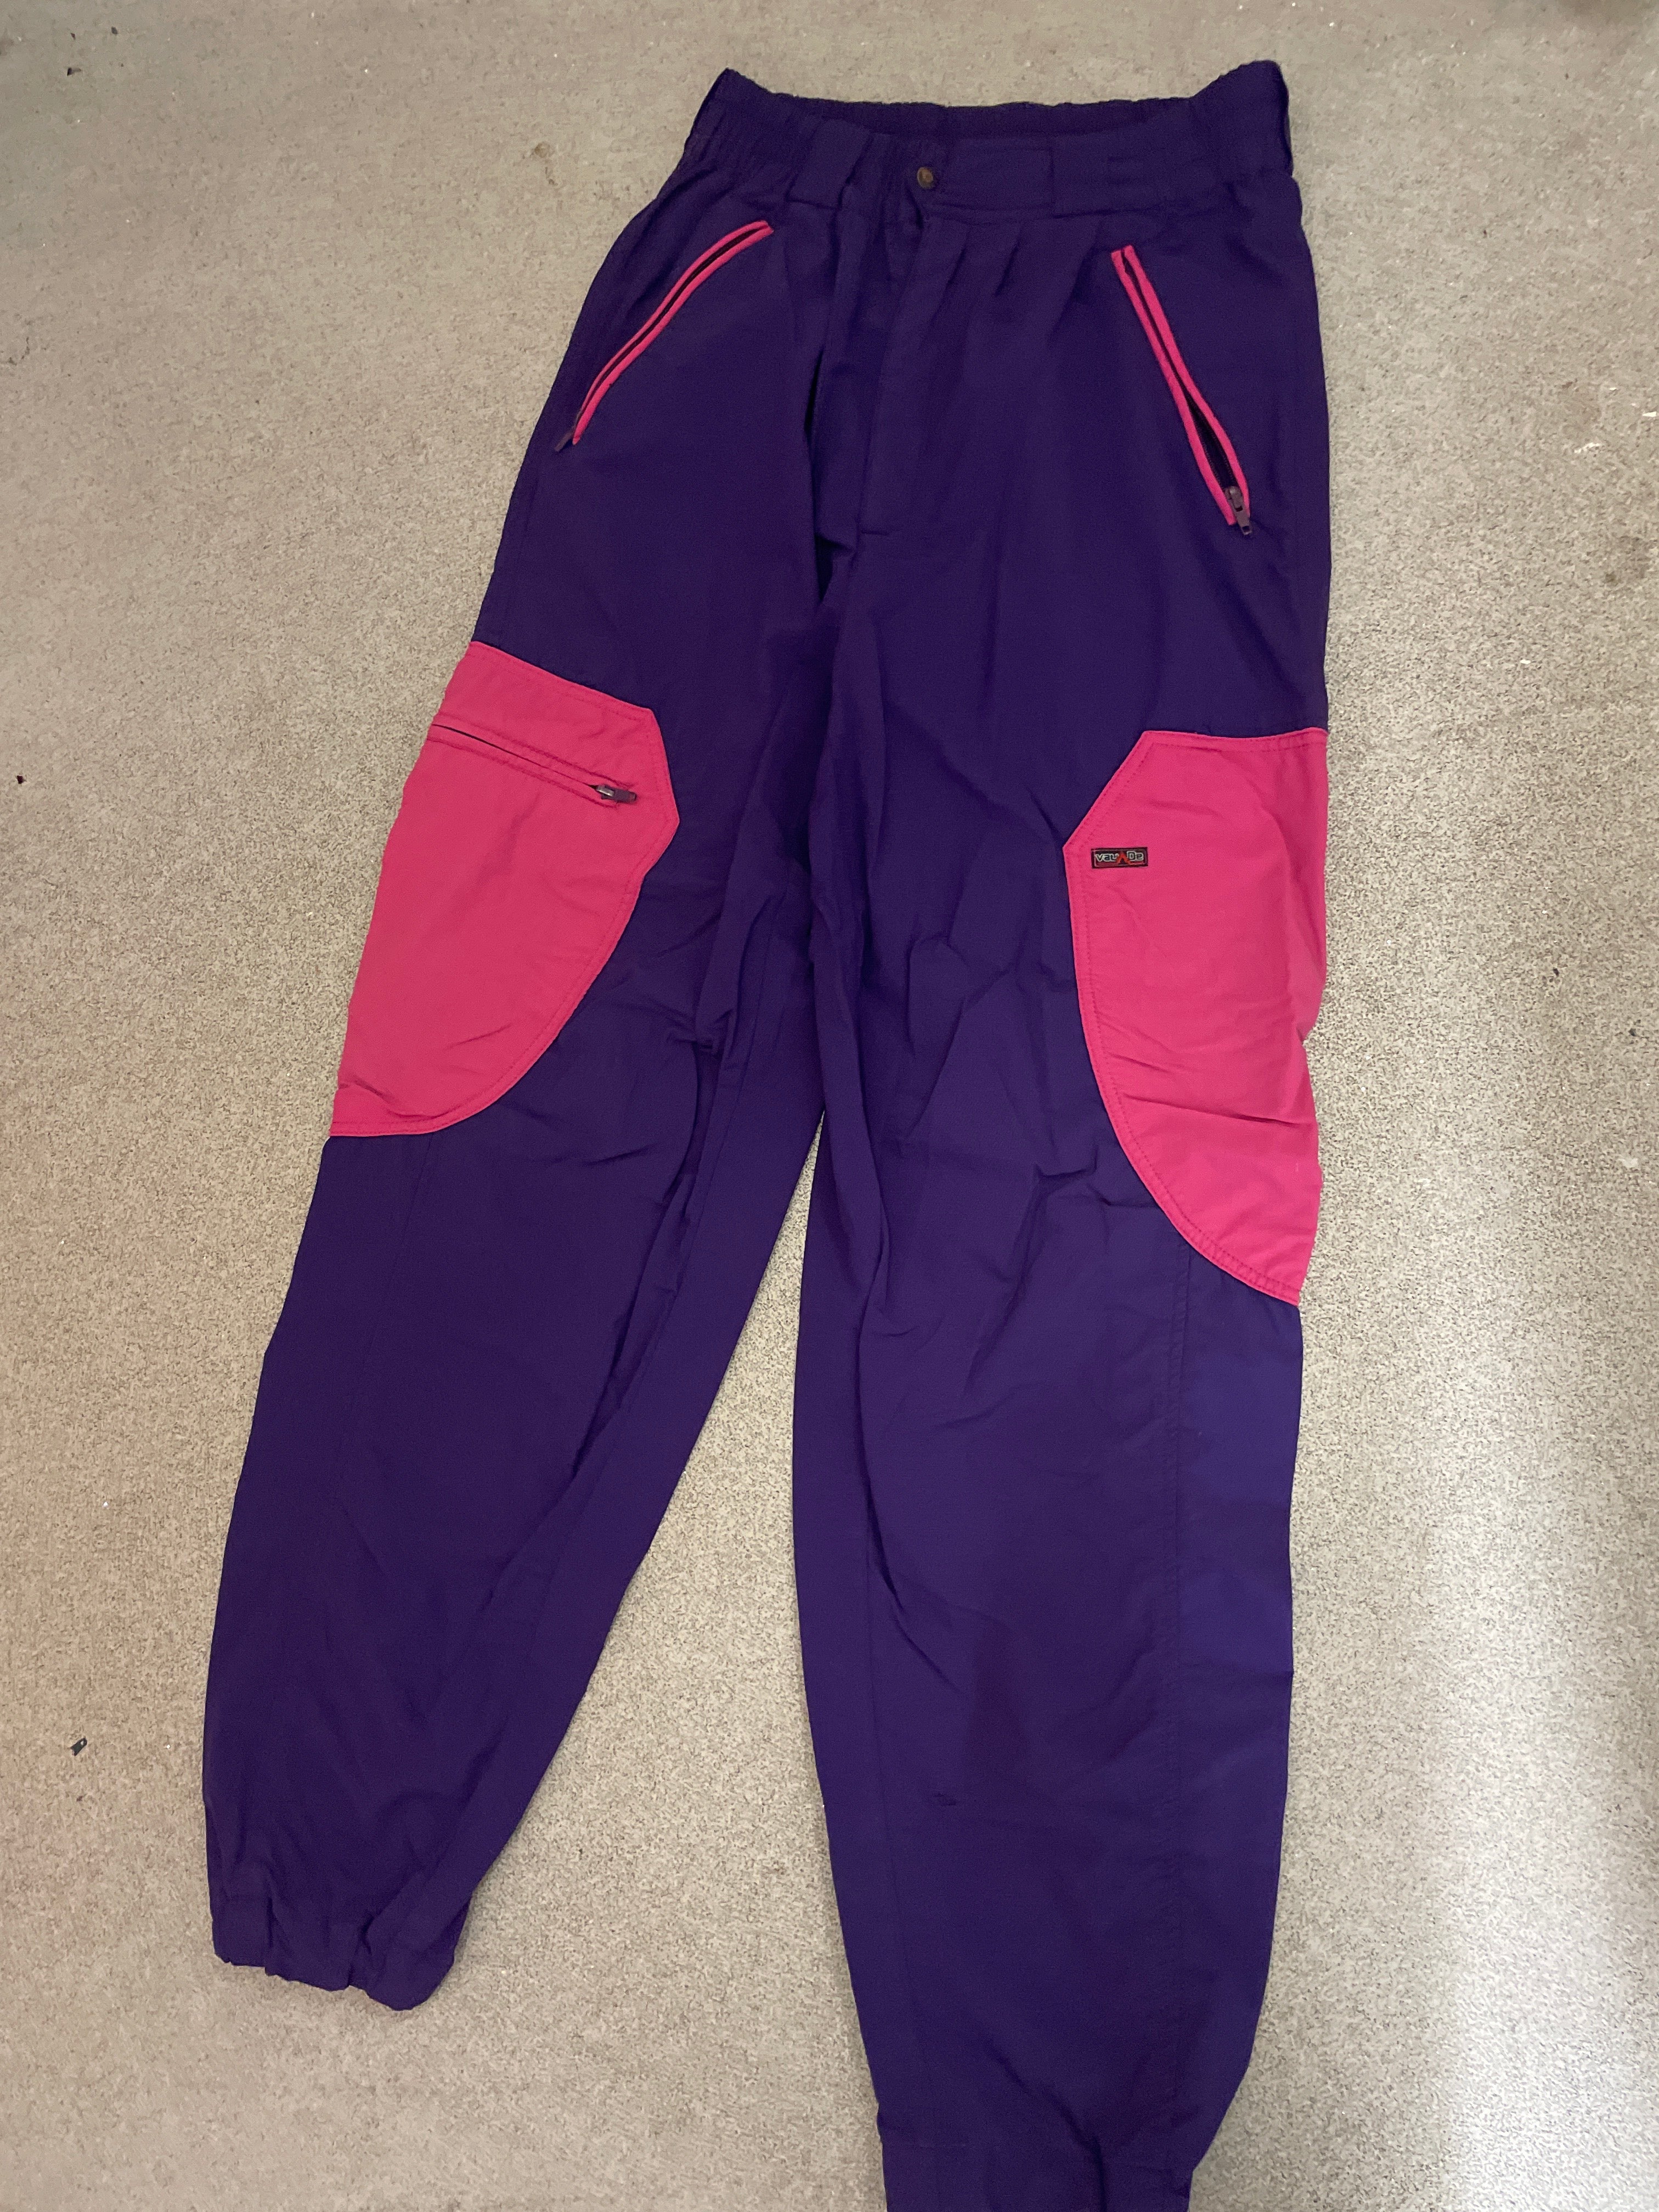 Vintage purple patchwork nylon cargo pant size M